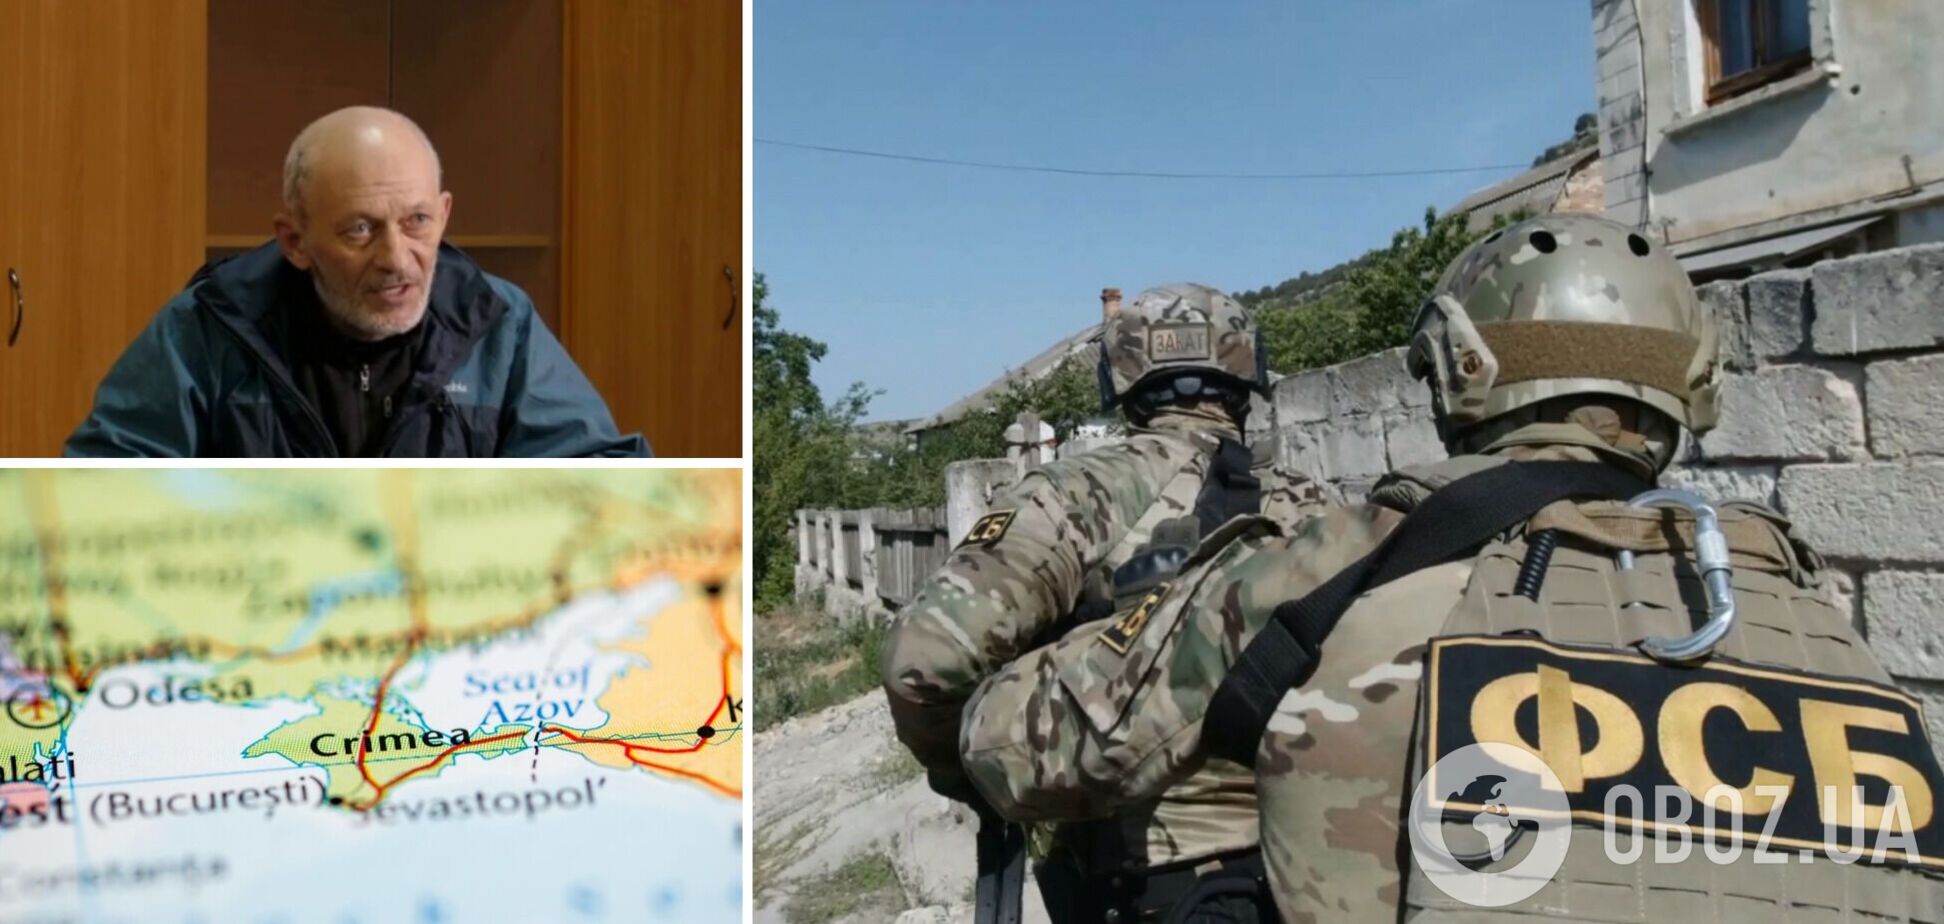 Напівсліпий пенсіонер і британська вибухівка: ФСБ показала відео з 'зізнанням' затриманого в Криму 'агента ГУР', але щось пішло  не так